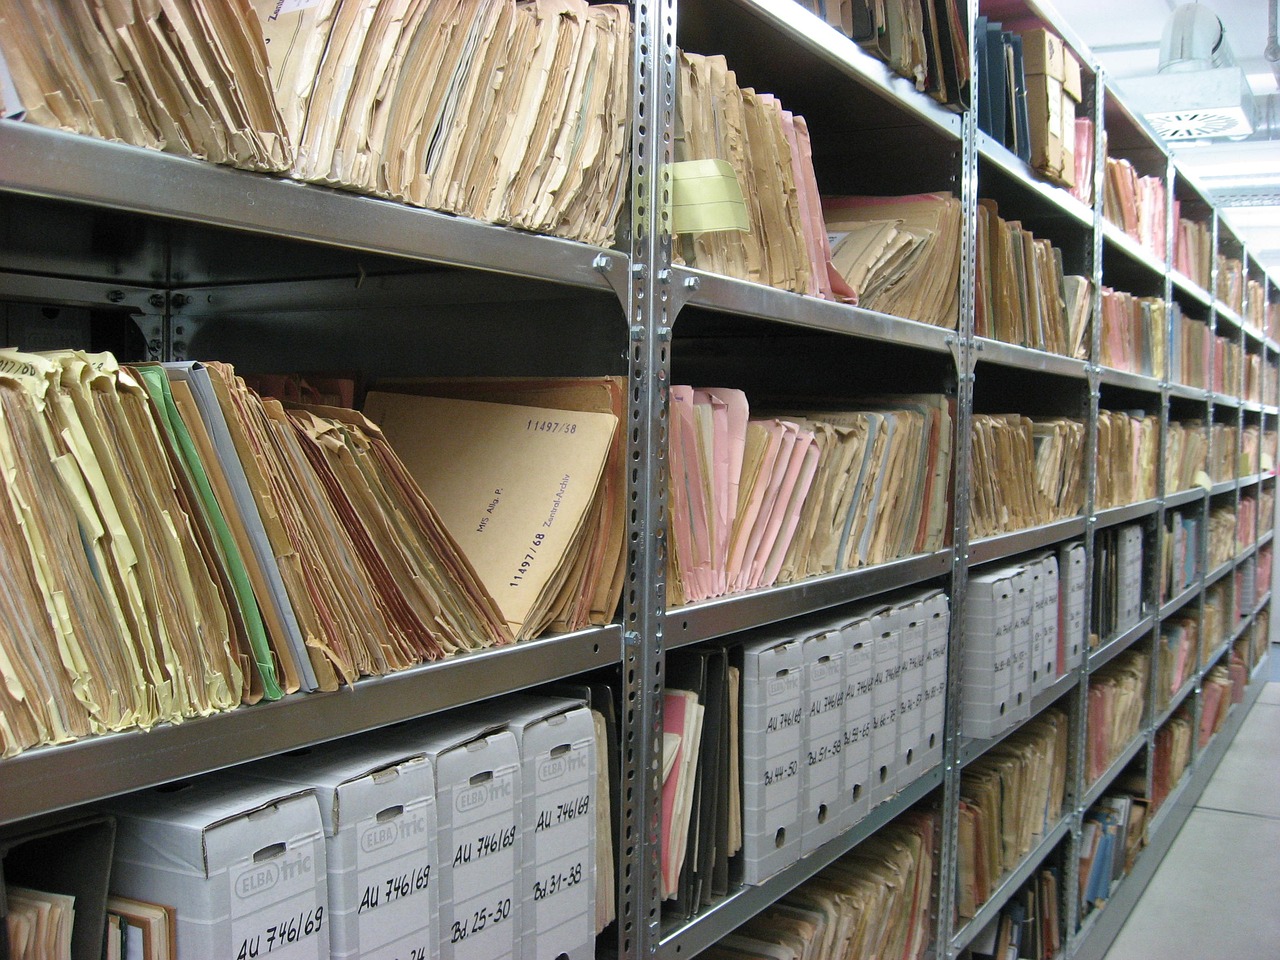 Long shelves of files